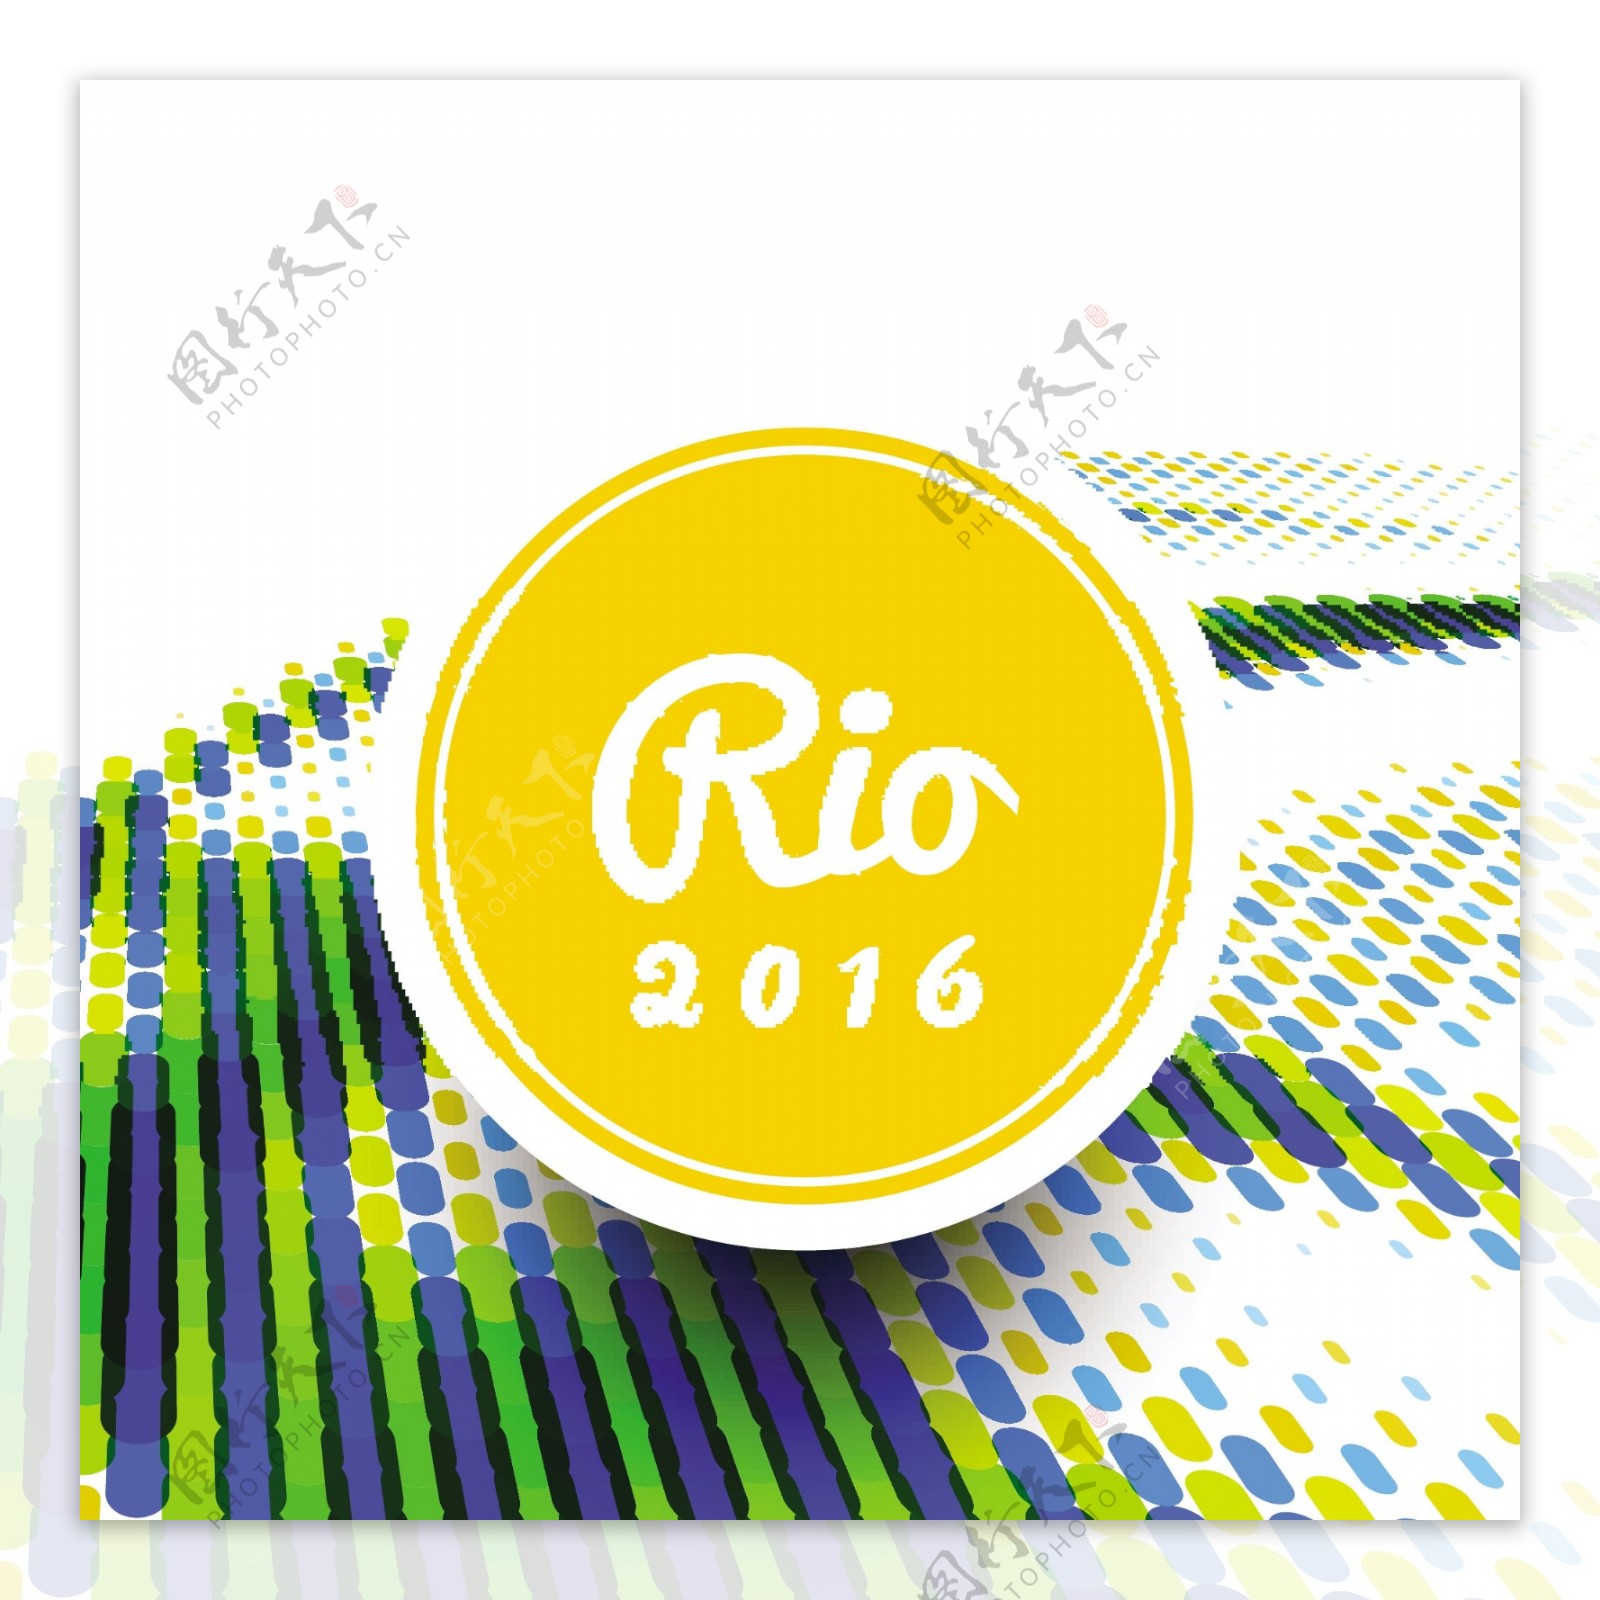 巴西夏季奥运会彩色背景矢量图